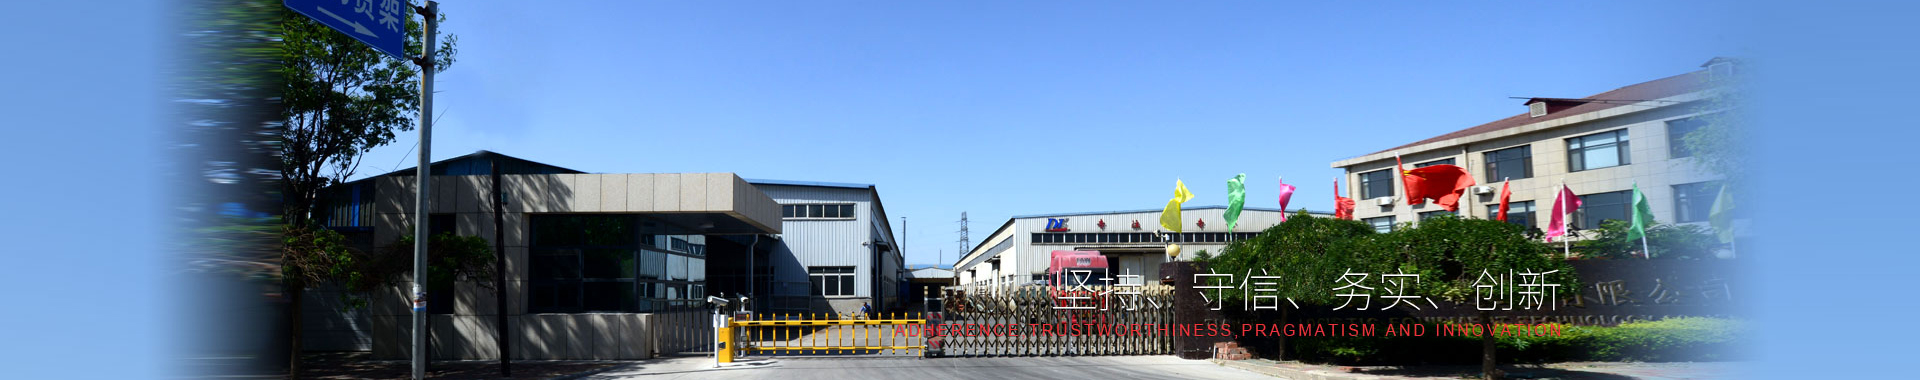 仓储货架-穿梭货架-自动化货架-重型货架-钢制平台货架-阁楼货架